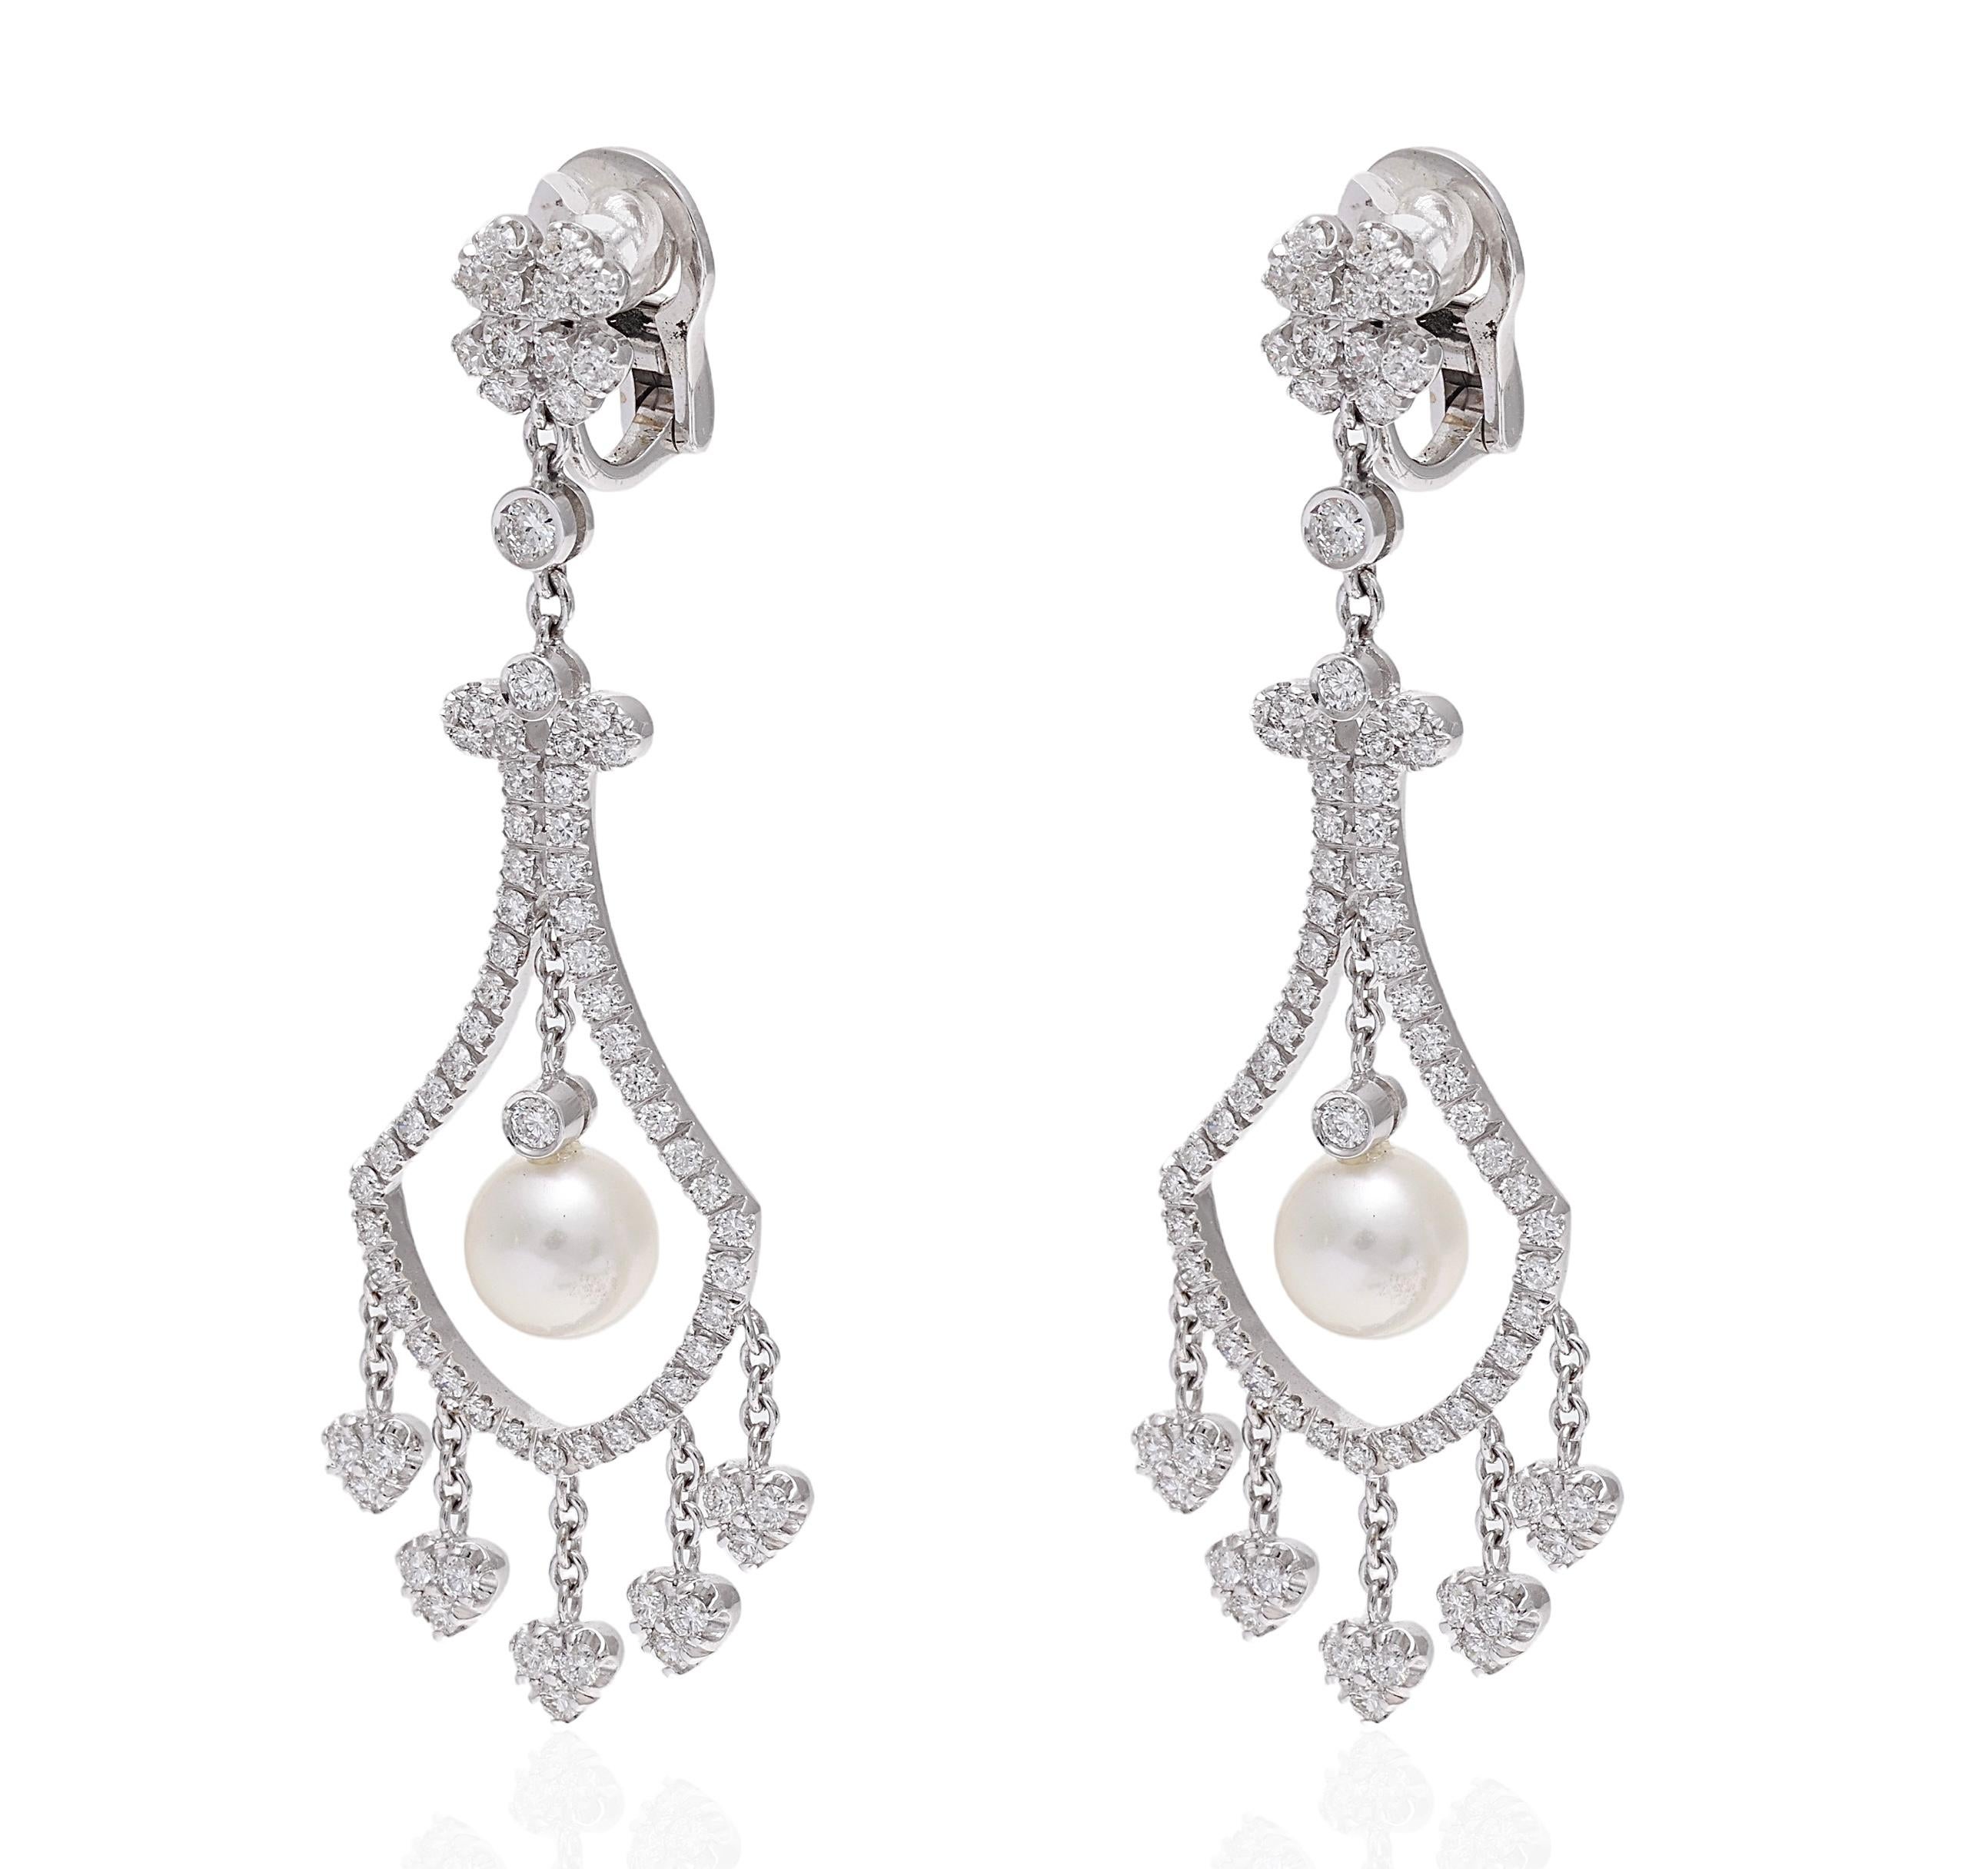 Magnifique Chandelier / Boucles d'oreilles pendantes en or blanc 18 ct. avec perles et 2.47 ct. Diamants 

Diamants : Diamants de taille brillante 2,47 ct.

Perles : 2 perles d'un diamètre de 7,5 mm

Matière : Or blanc 18 carats

Mesures :  59.5 mm